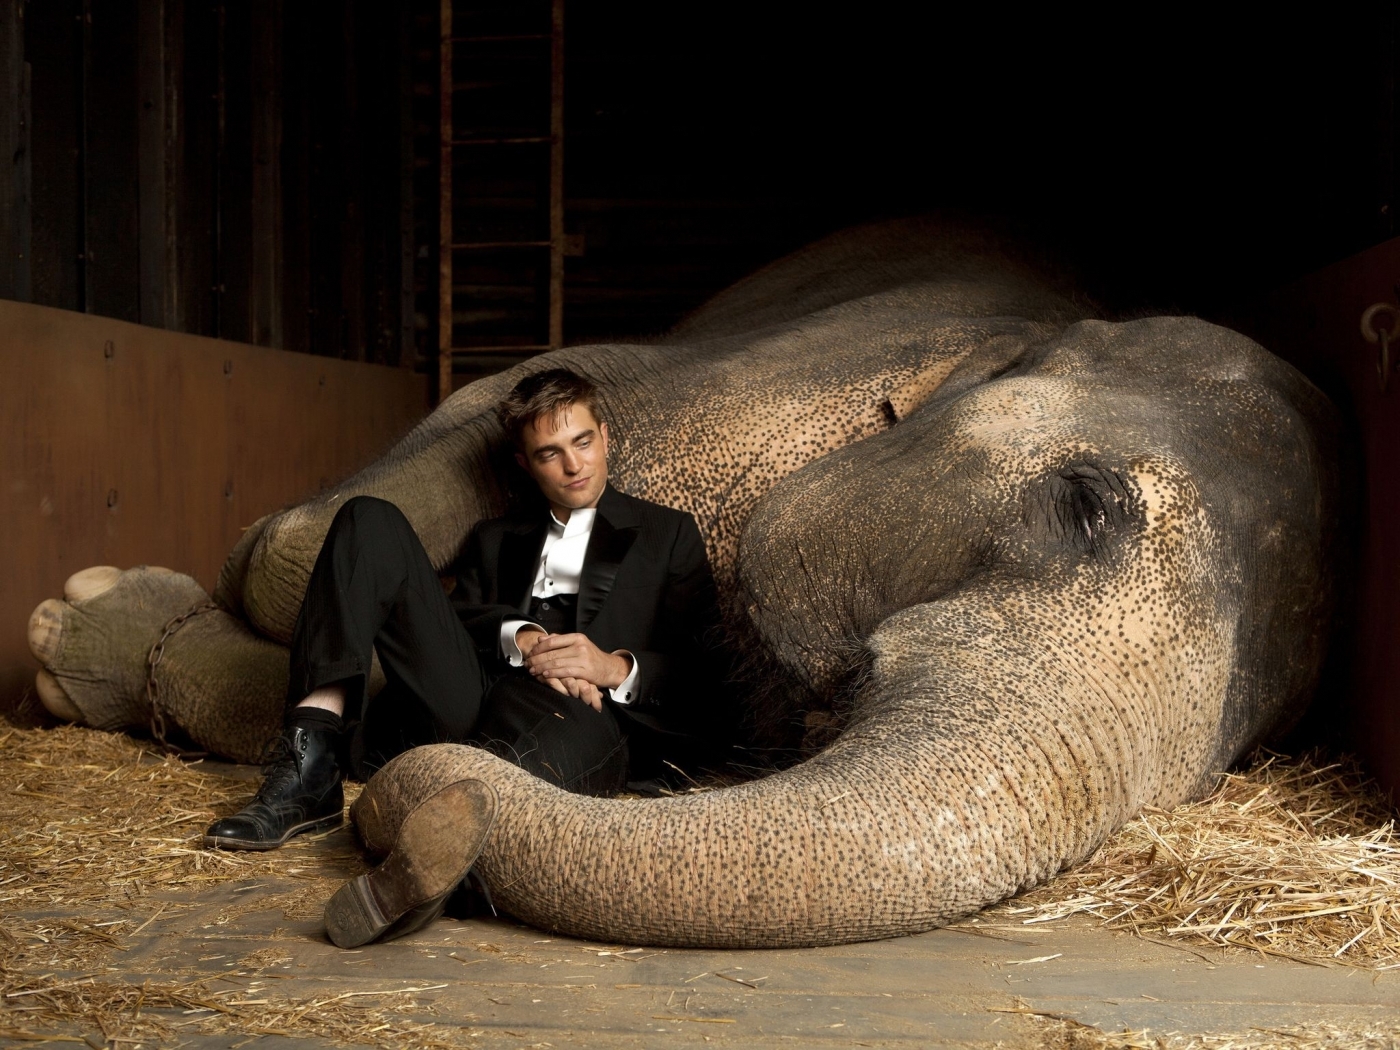 Free download wallpaper Animals, People, Men, Elephants, Robert Pattinson, Actors, Cinema on your PC desktop